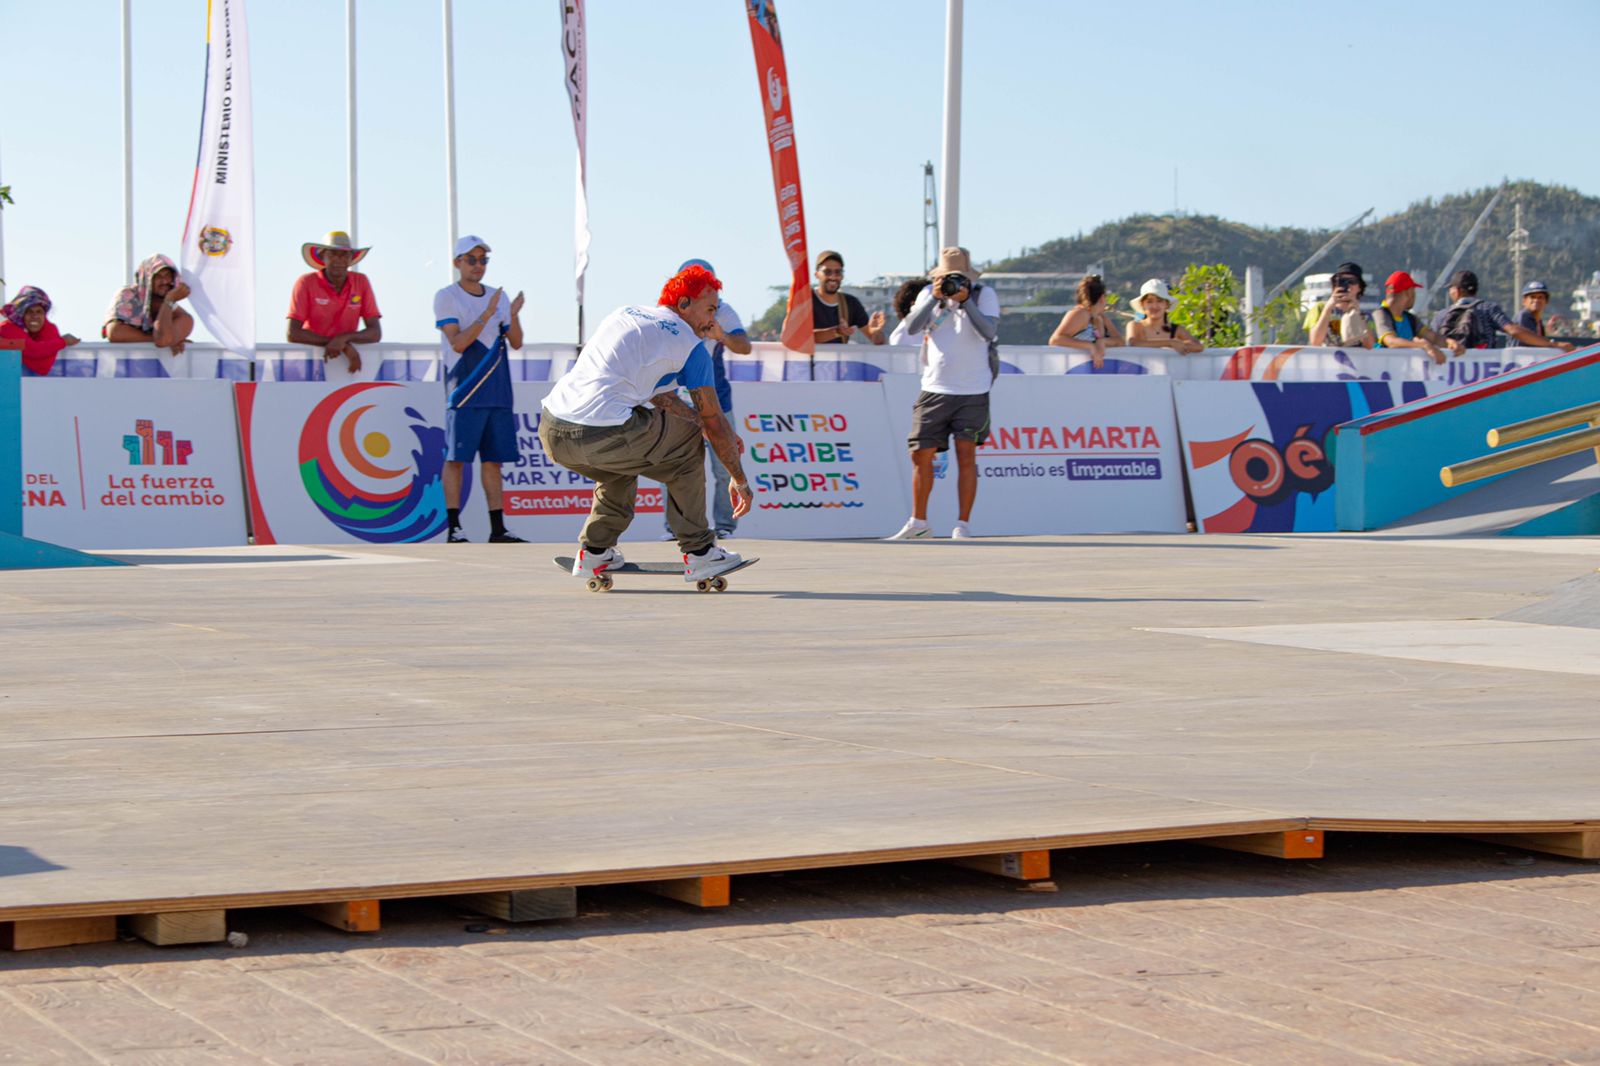 16 deportistas de skateboarding disputarán la final en los I Juegos Centroamericanos y del Caribe Mar y Playa